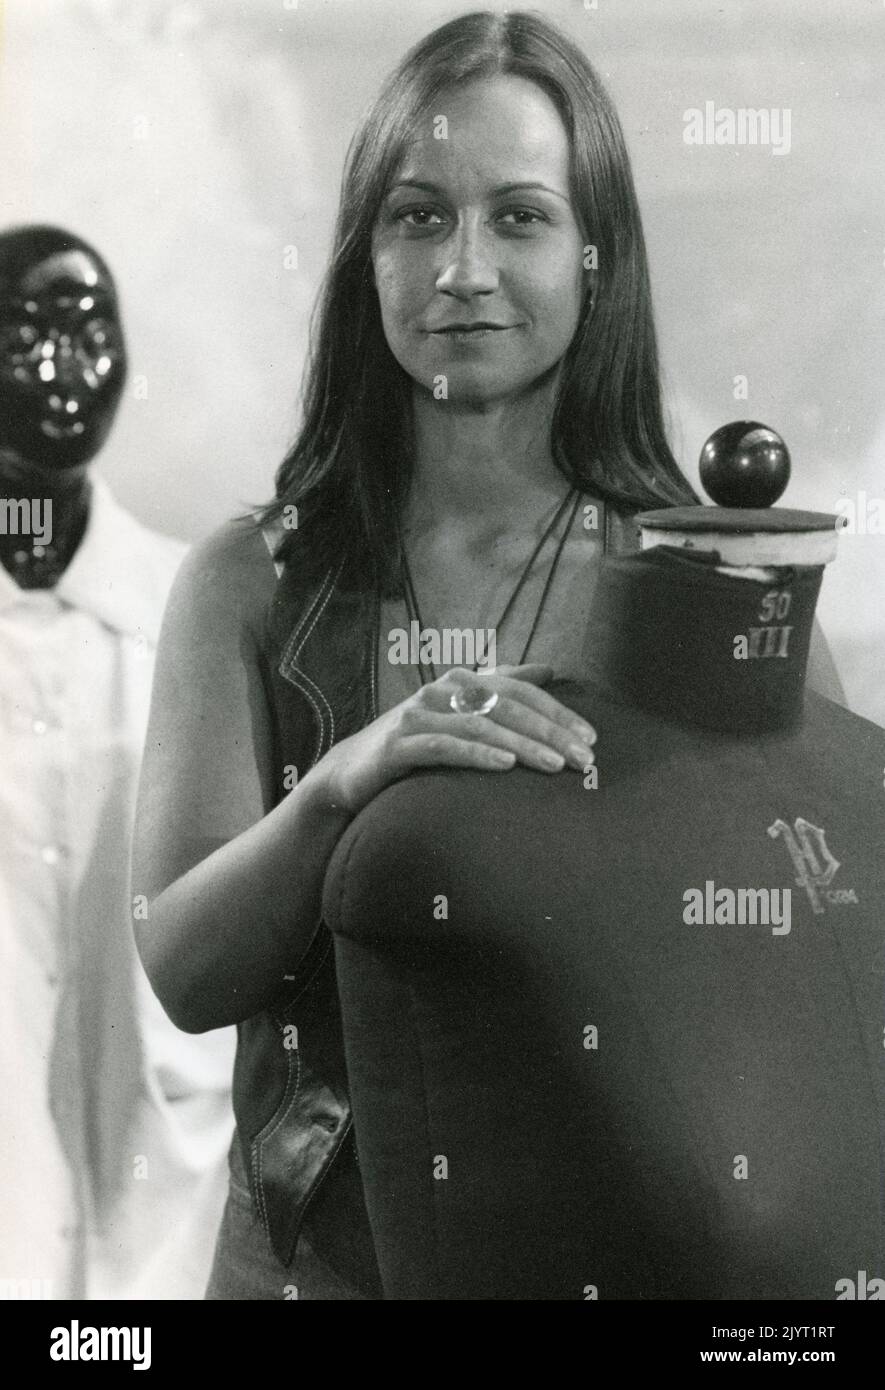 La diseñadora y directora alemana Britta Steilmann, pionera de la moda ecológica, Alemania 1990s Foto de stock